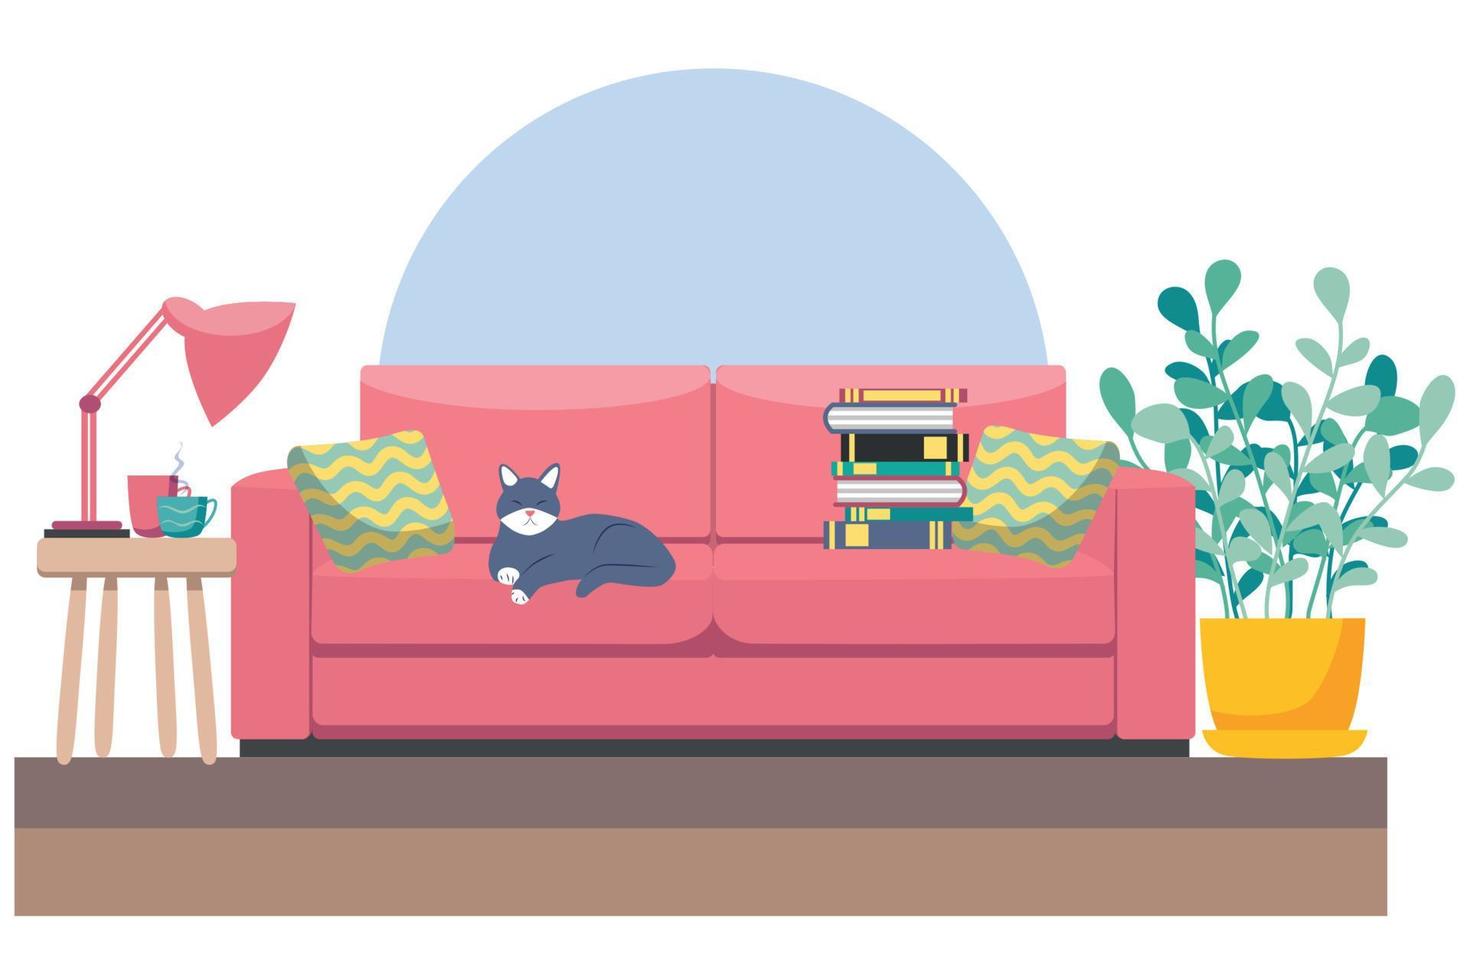 salón con muebles. acogedor interior con sofá y tv. ilustración de estilo plano. vector